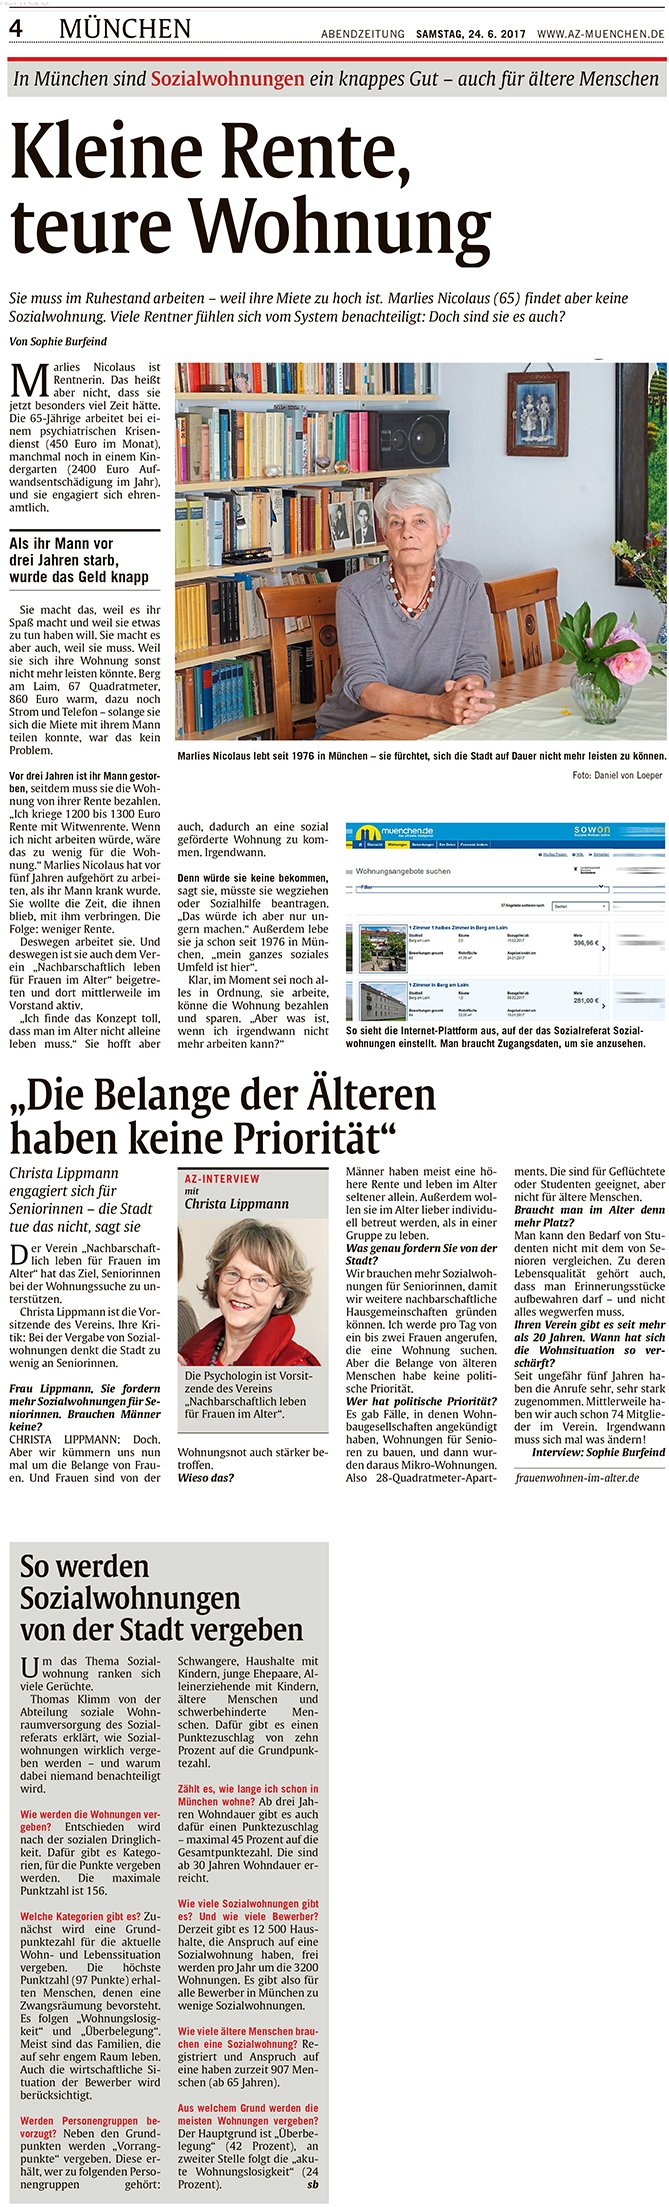 Artikel in Münchner Abendzeitung über teures Wohnen in München mit kleiner Rente